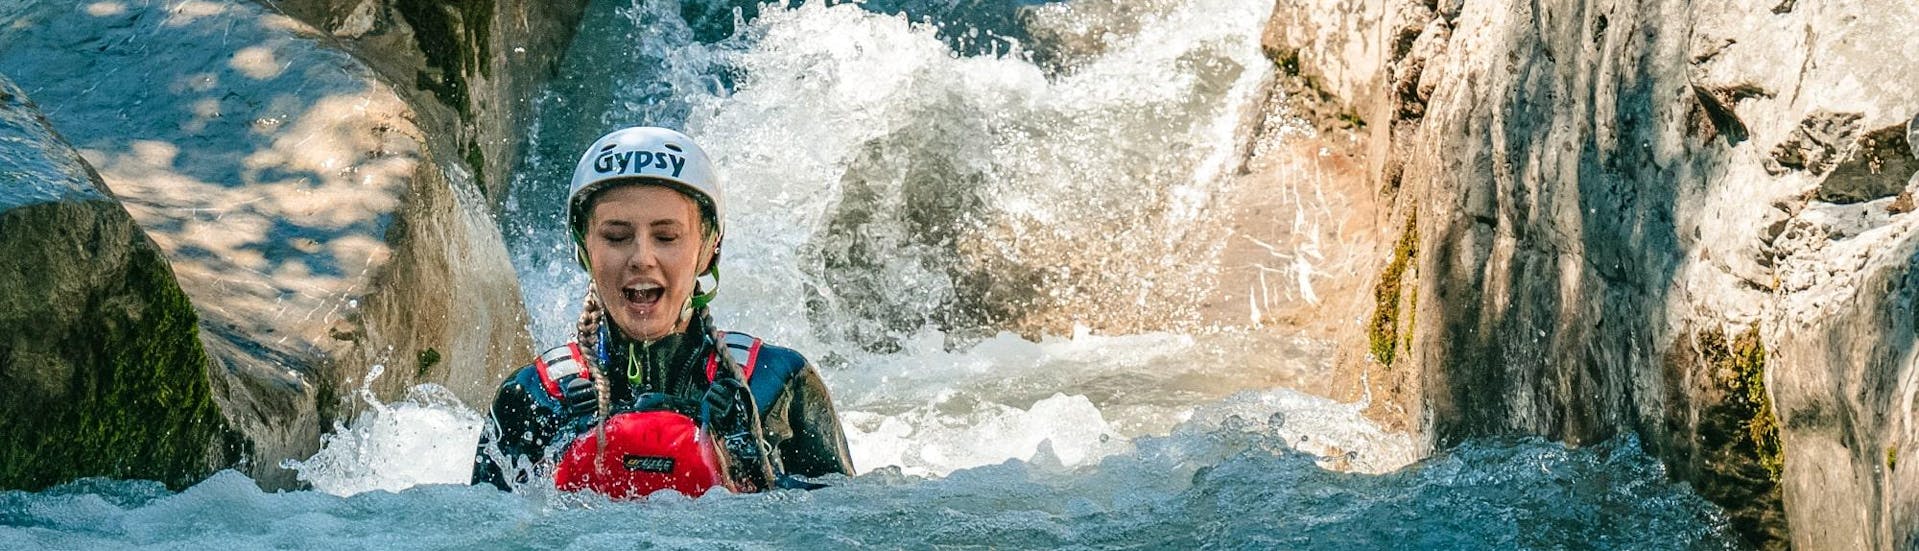 Foto van een vrouw in het water tijdens een canyoning activiteit in Saxeten.